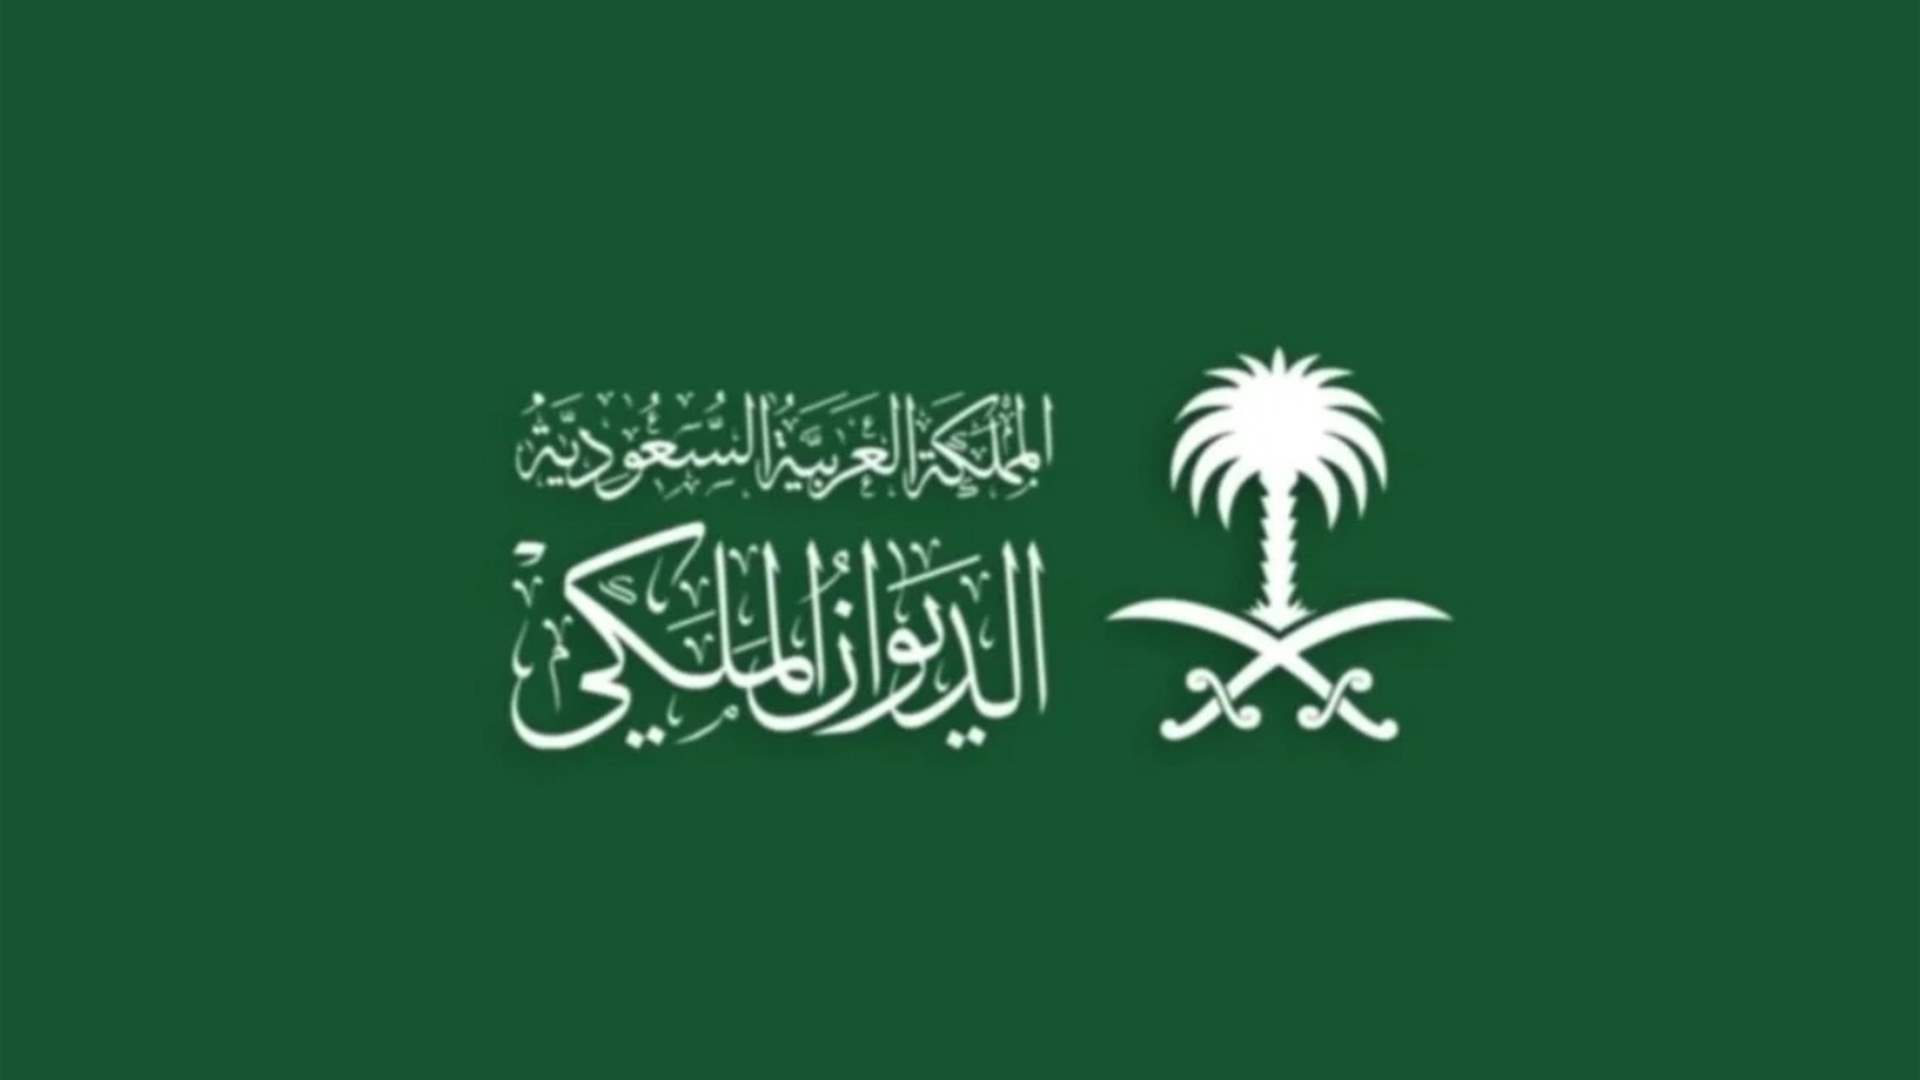 وفاة الأميرة سلطانه بنت سعود بن عبدالعزيز آل سعود